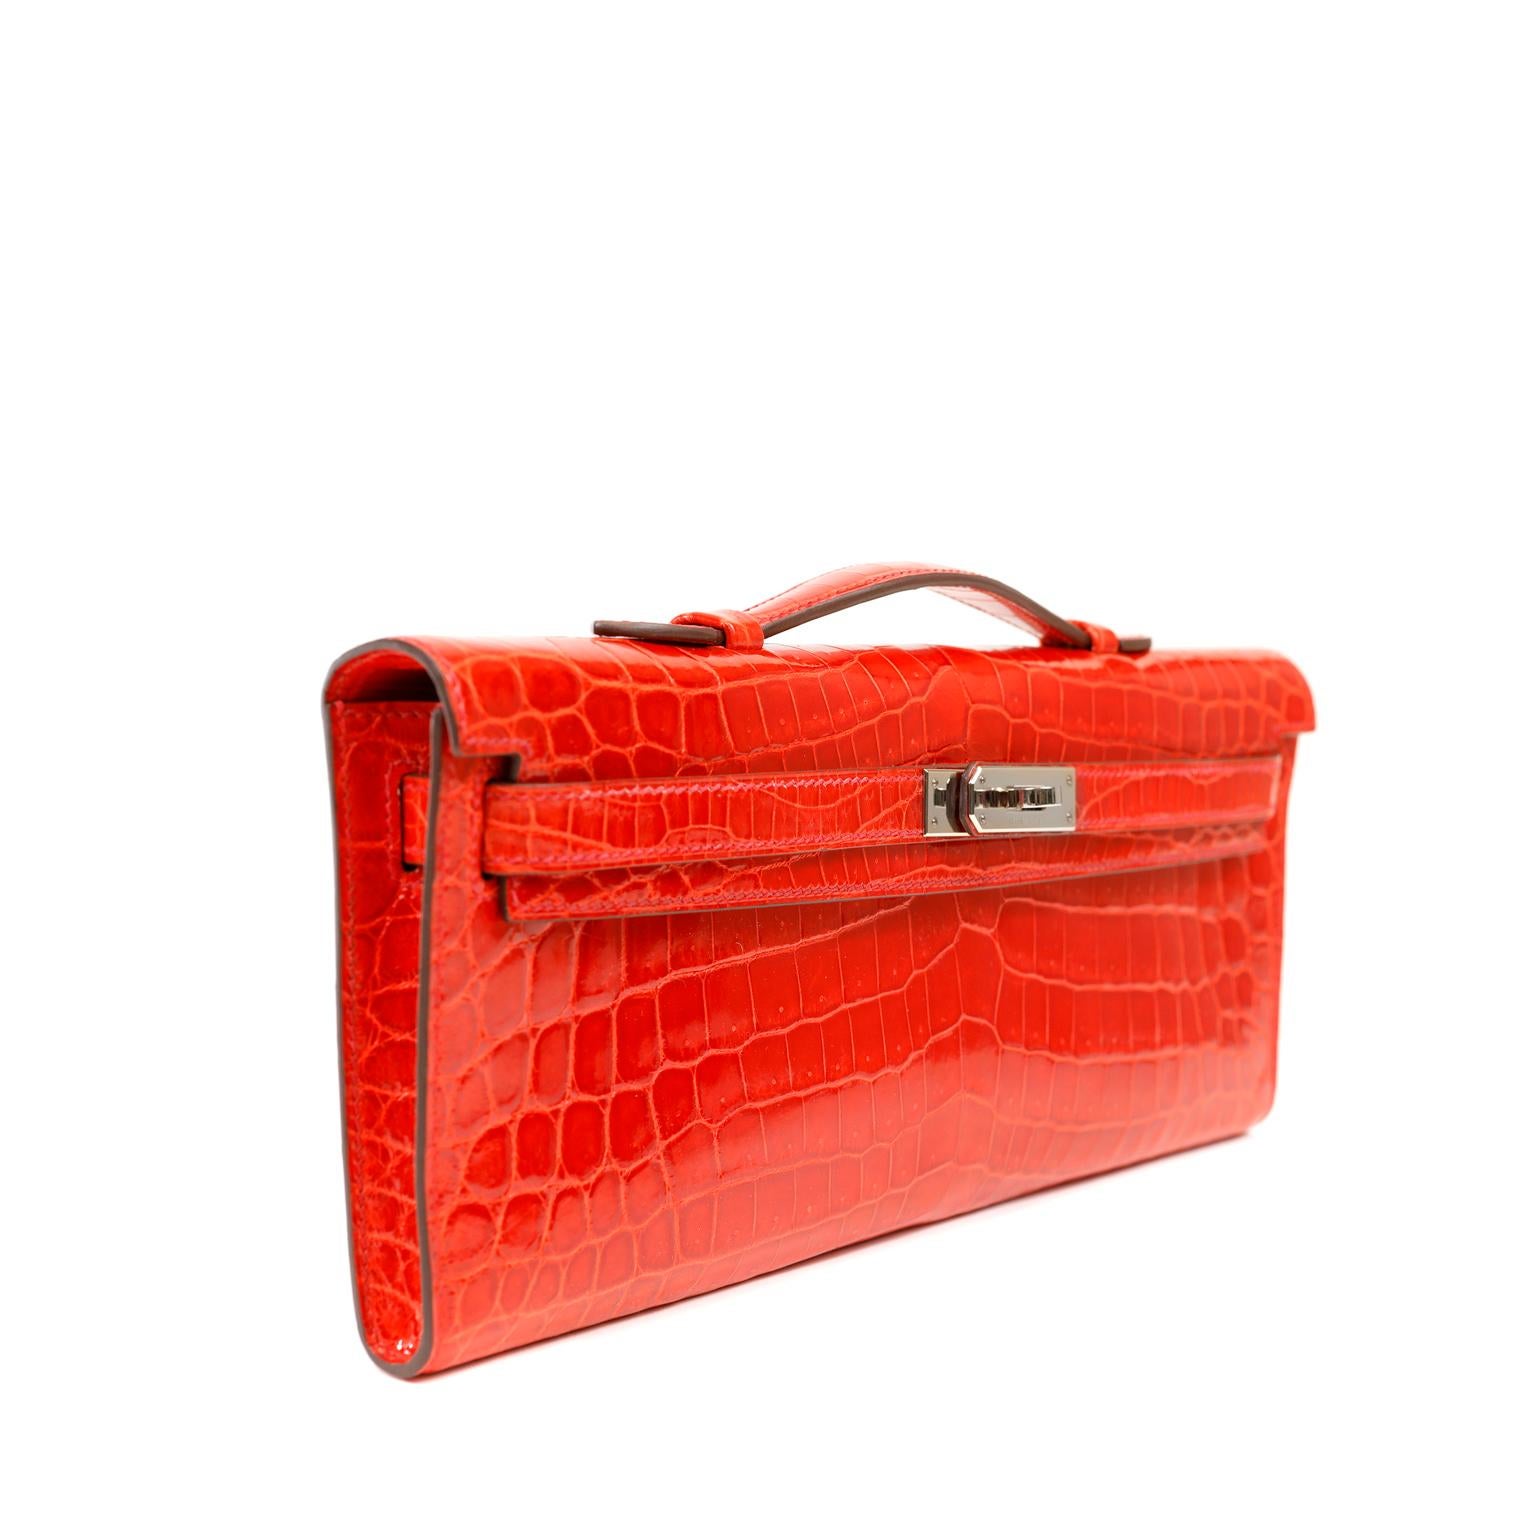 Diese authentische Hermès Vivid Red Crocodile Kelly Cut Clutch ist in tadellosem Zustand.  Die Kelly Cut wird von geschickten Handwerkern in Handarbeit hergestellt und ist eine äußerst seltene Tasche aus exotischem Niloticus-Krokodilleder mit